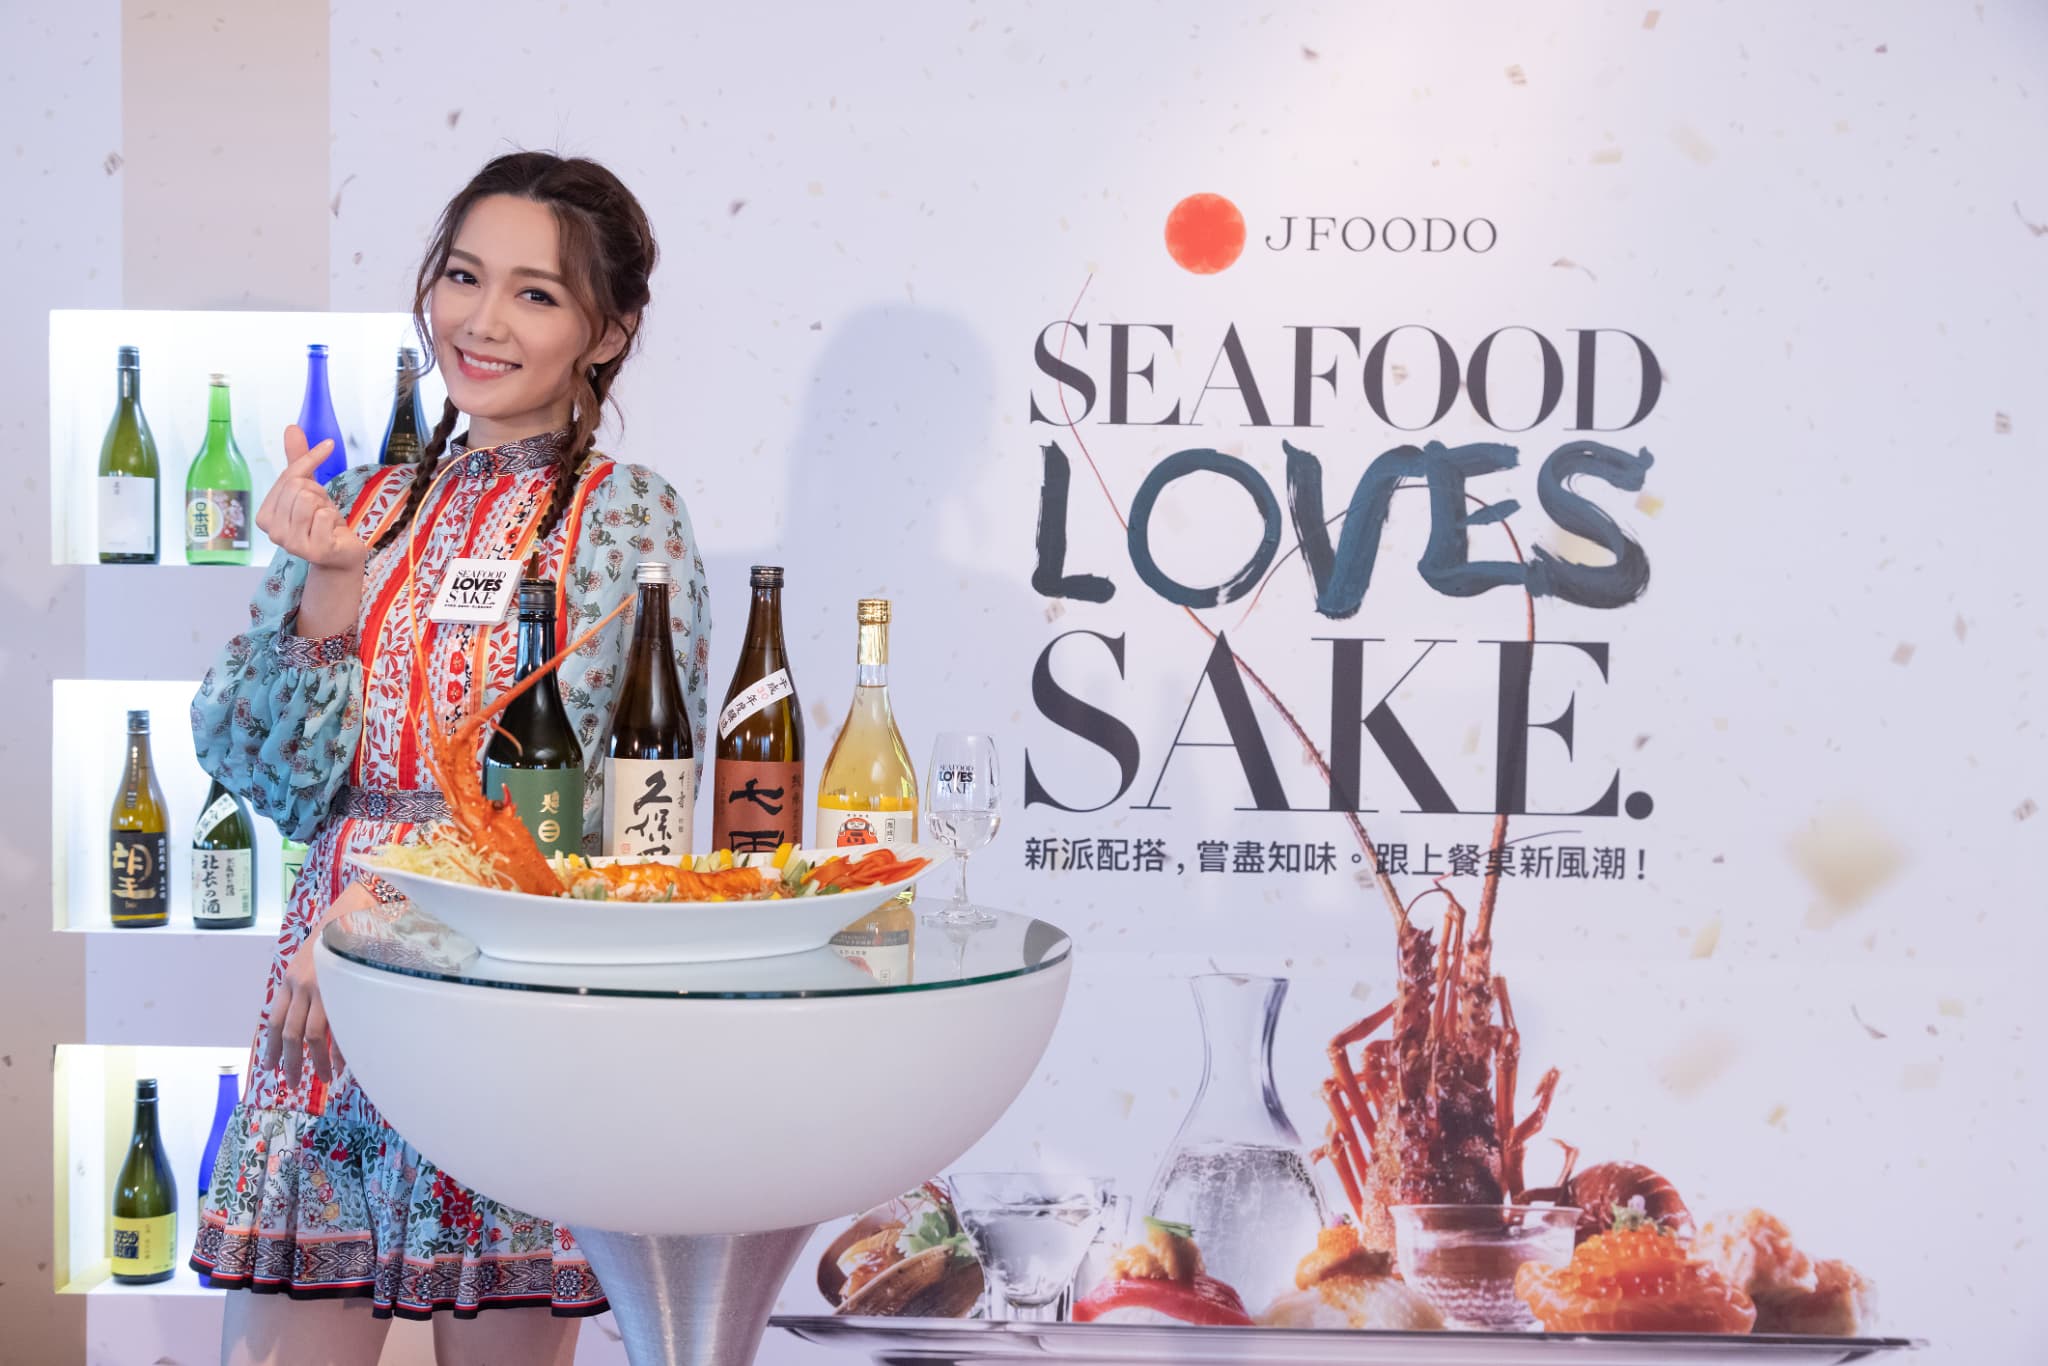 知名藝人湯洛雯和名廚黃亞保對「日本清酒×海鮮料理」的正面評價